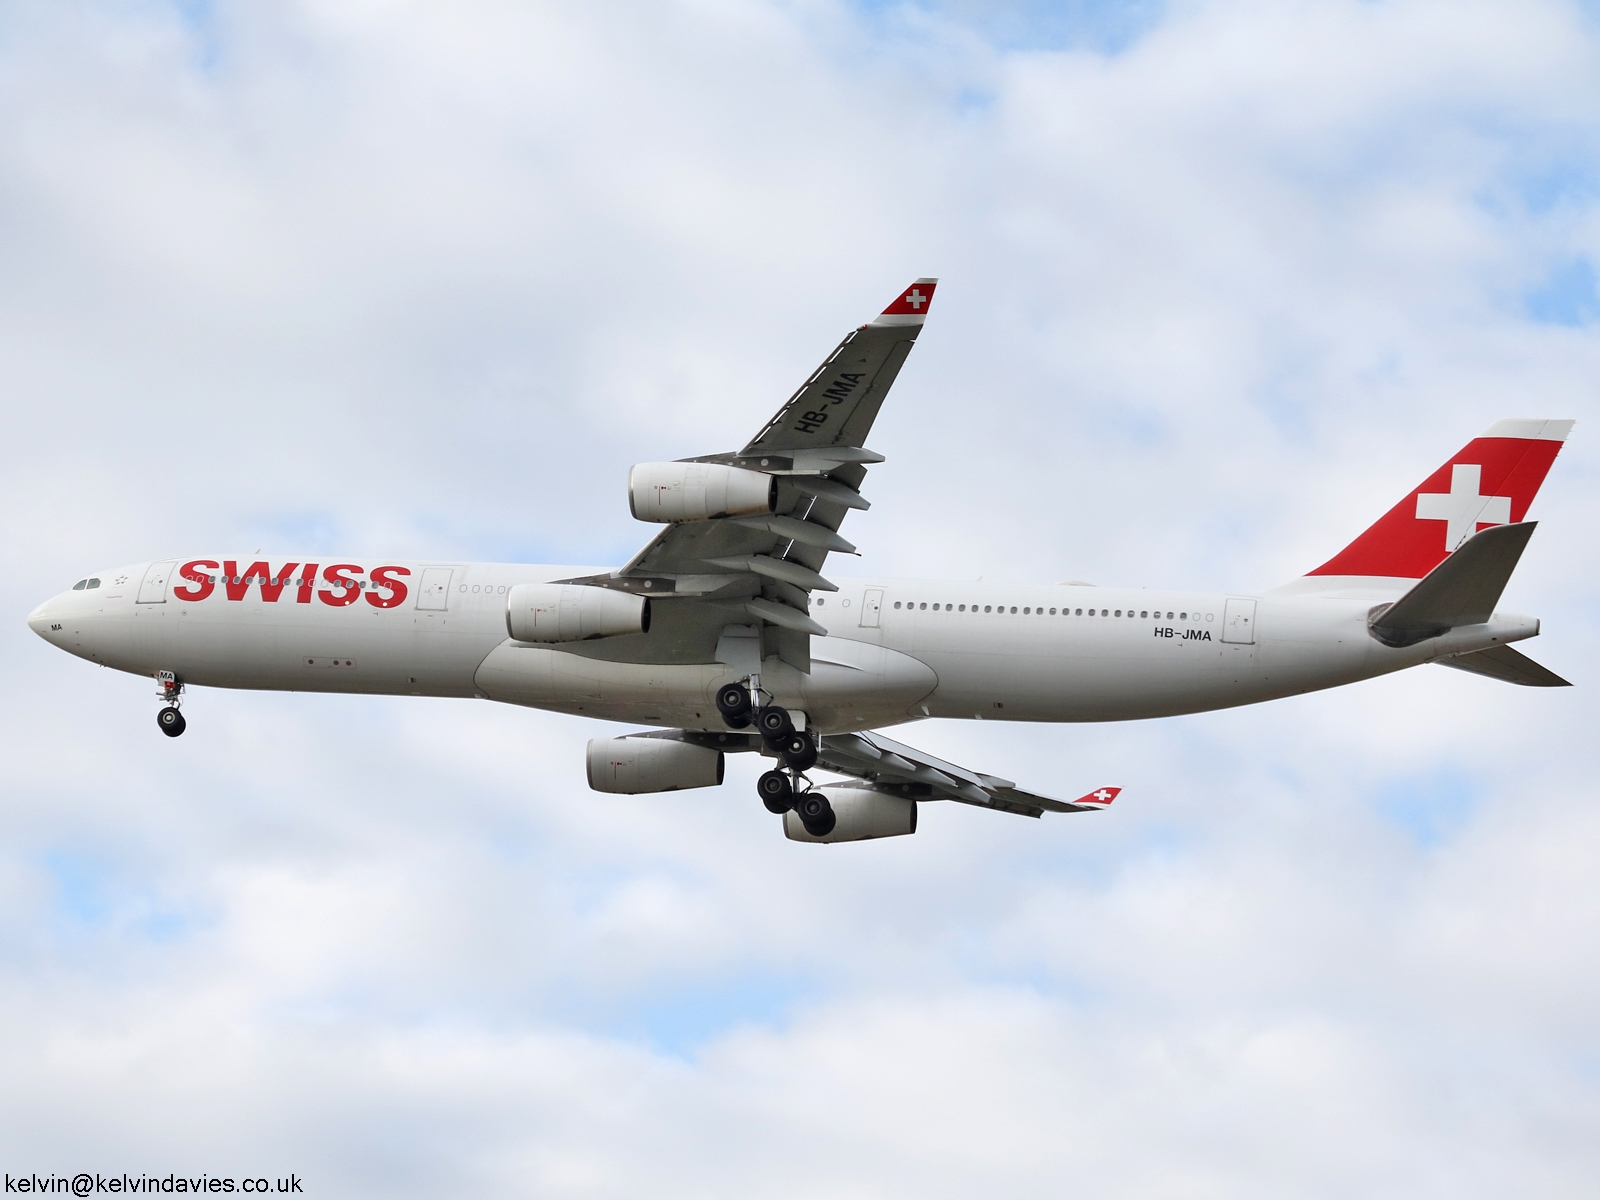 Swiss International A340 HB-JMA